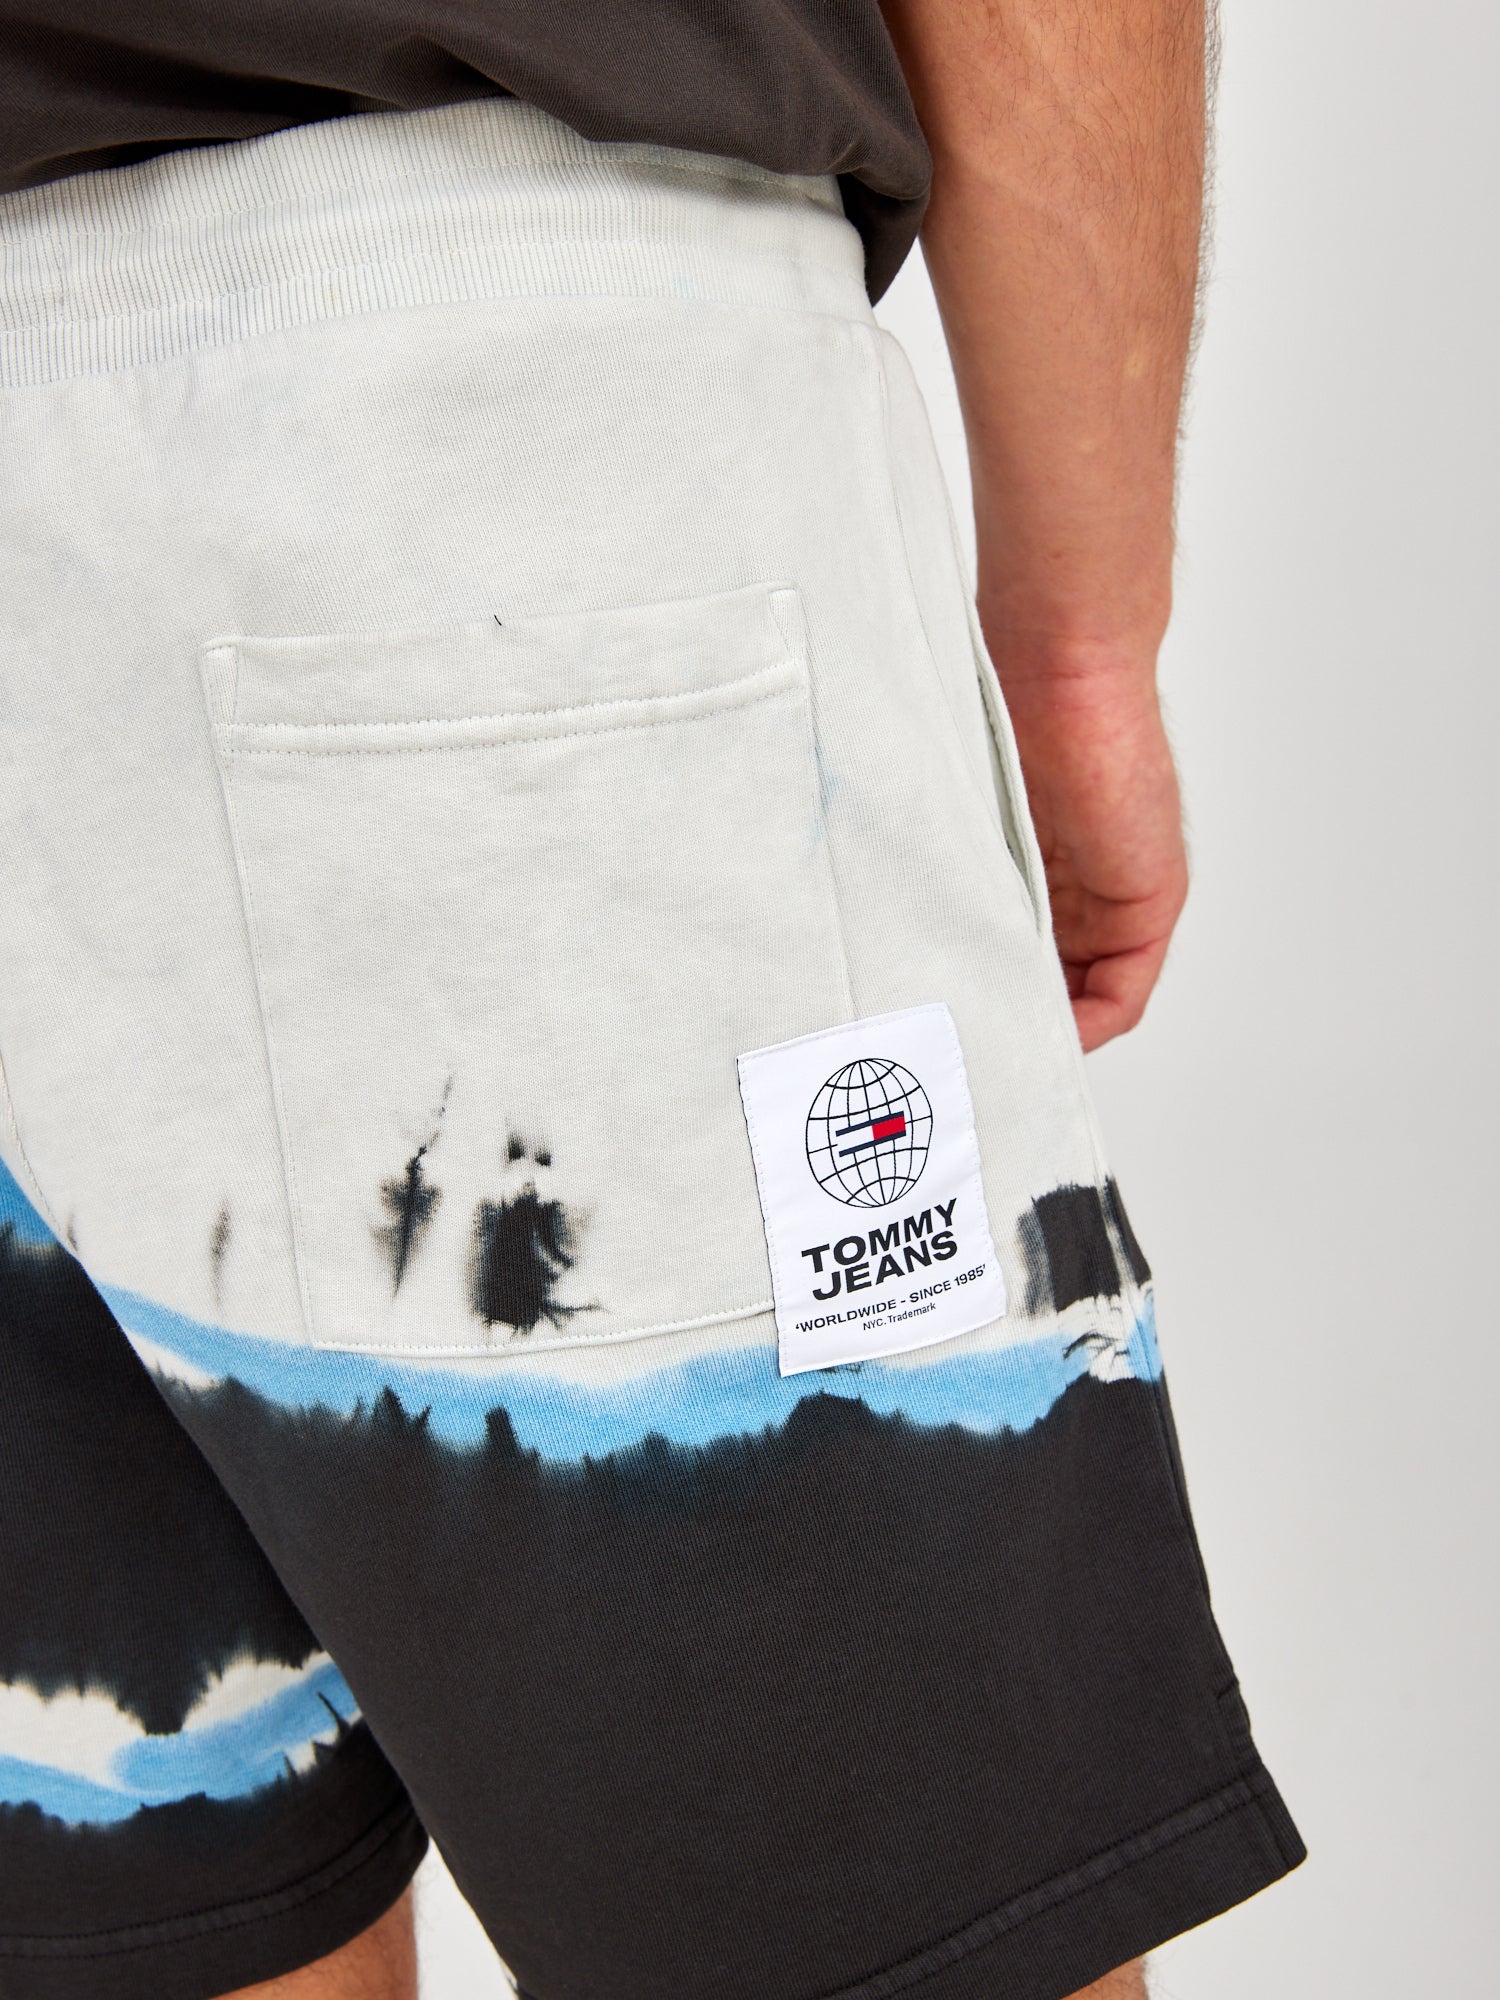 מכנסיים קצרים בהדפס טאי דאי- Tommy Hilfiger|טומי הילפיגר